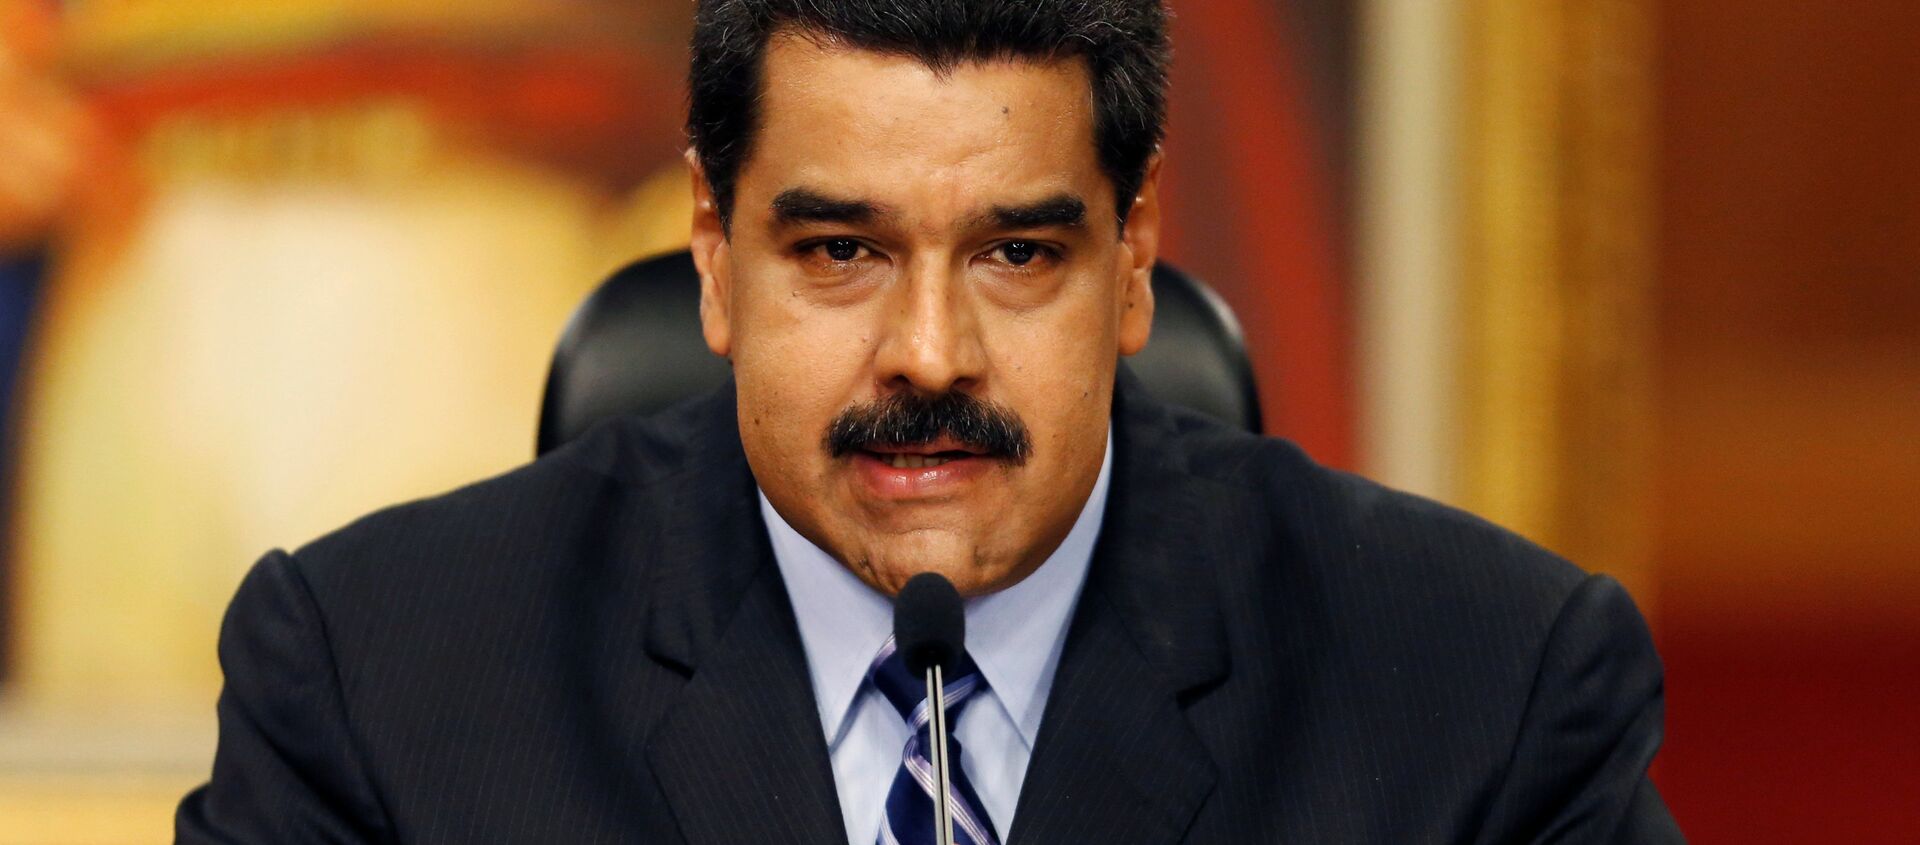 Nicolás Maduro, presidente de Venezuela - Sputnik Mundo, 1920, 12.10.2020